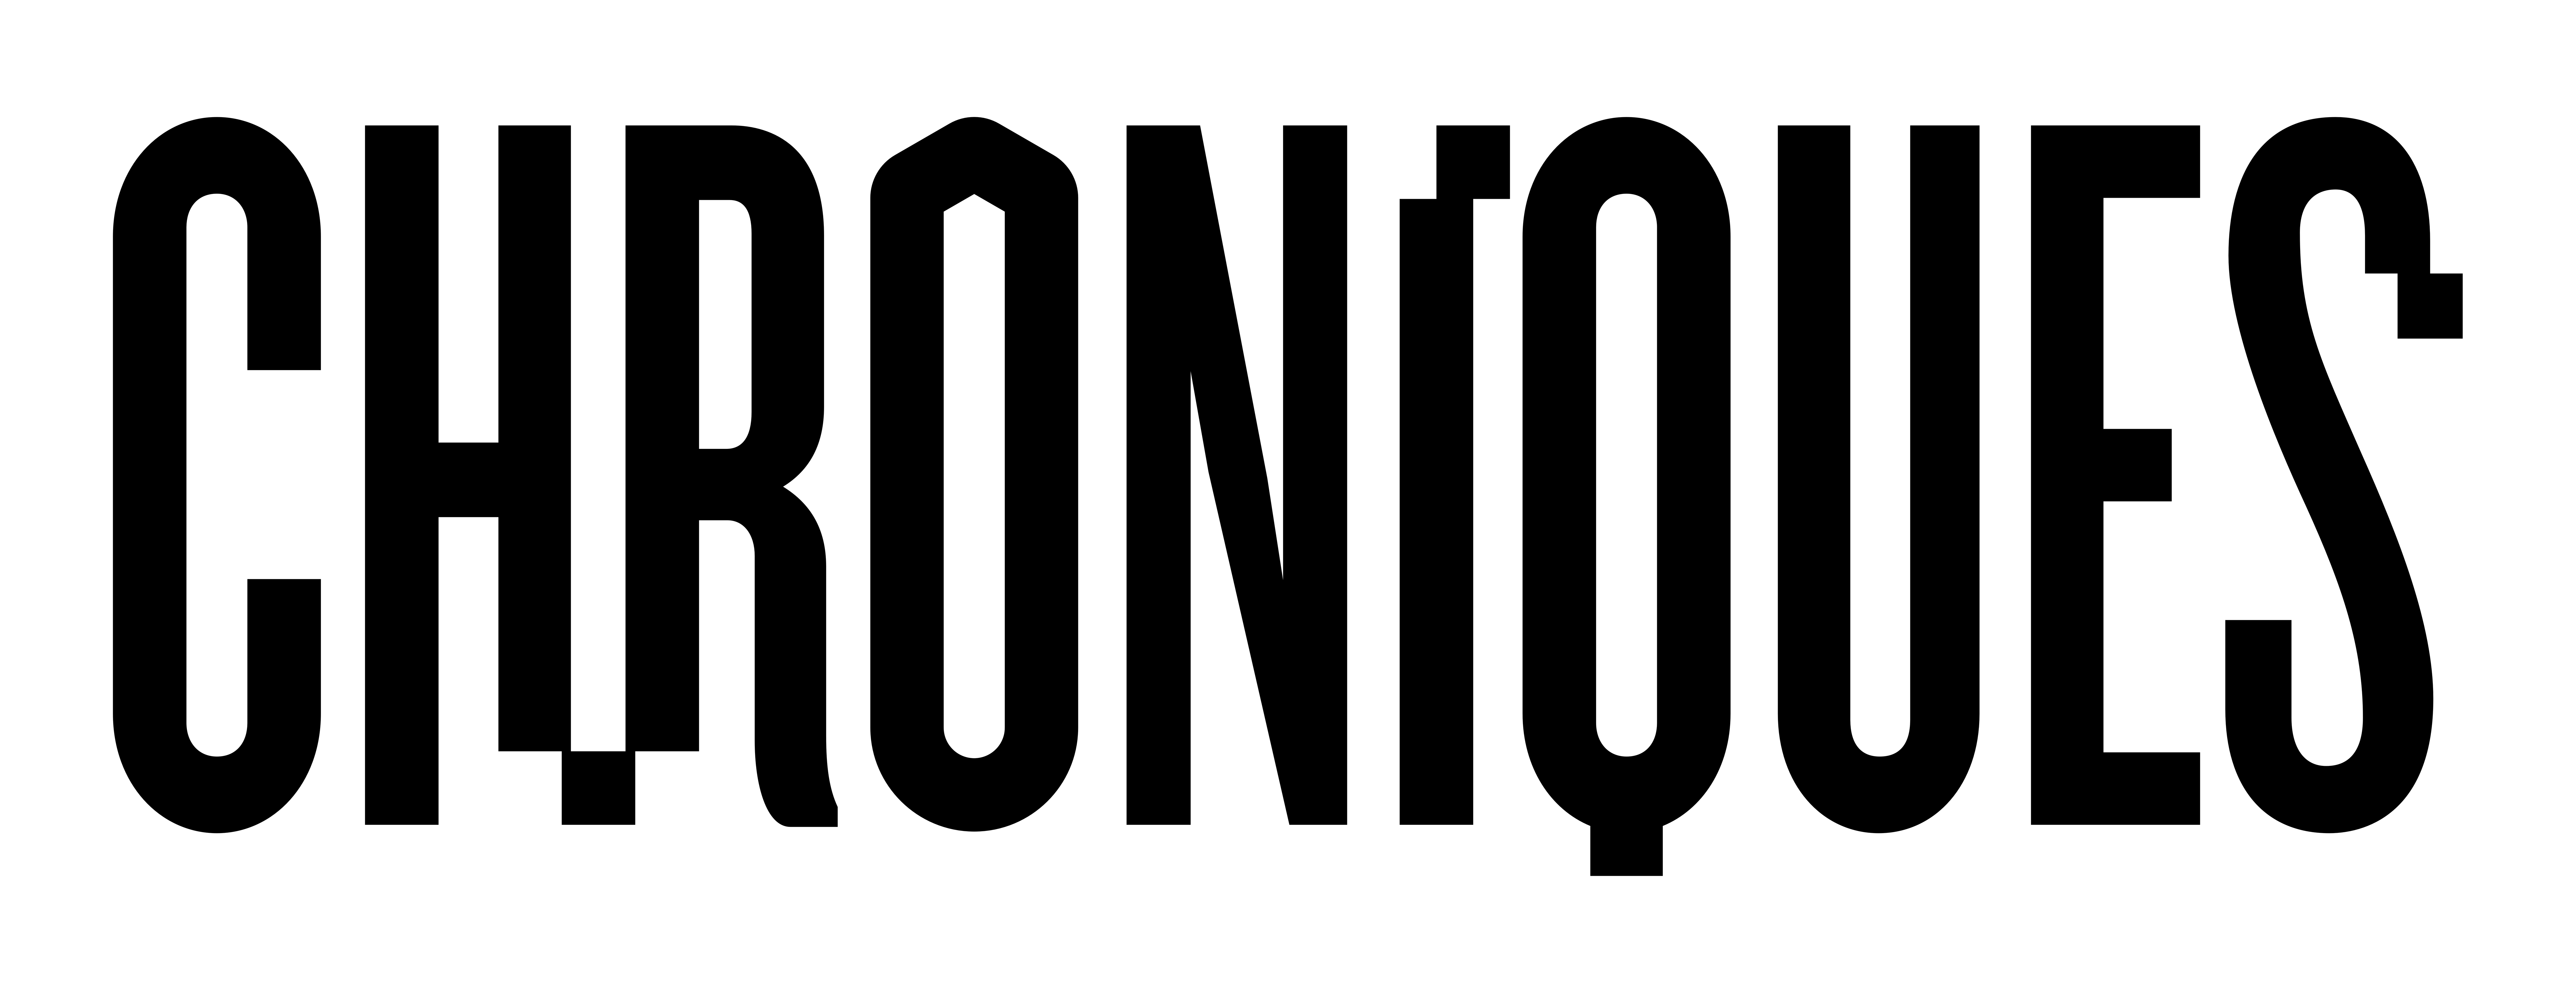 Logo de la Biennale Chroniques contenant un lien redirigeant sur leur site internet.